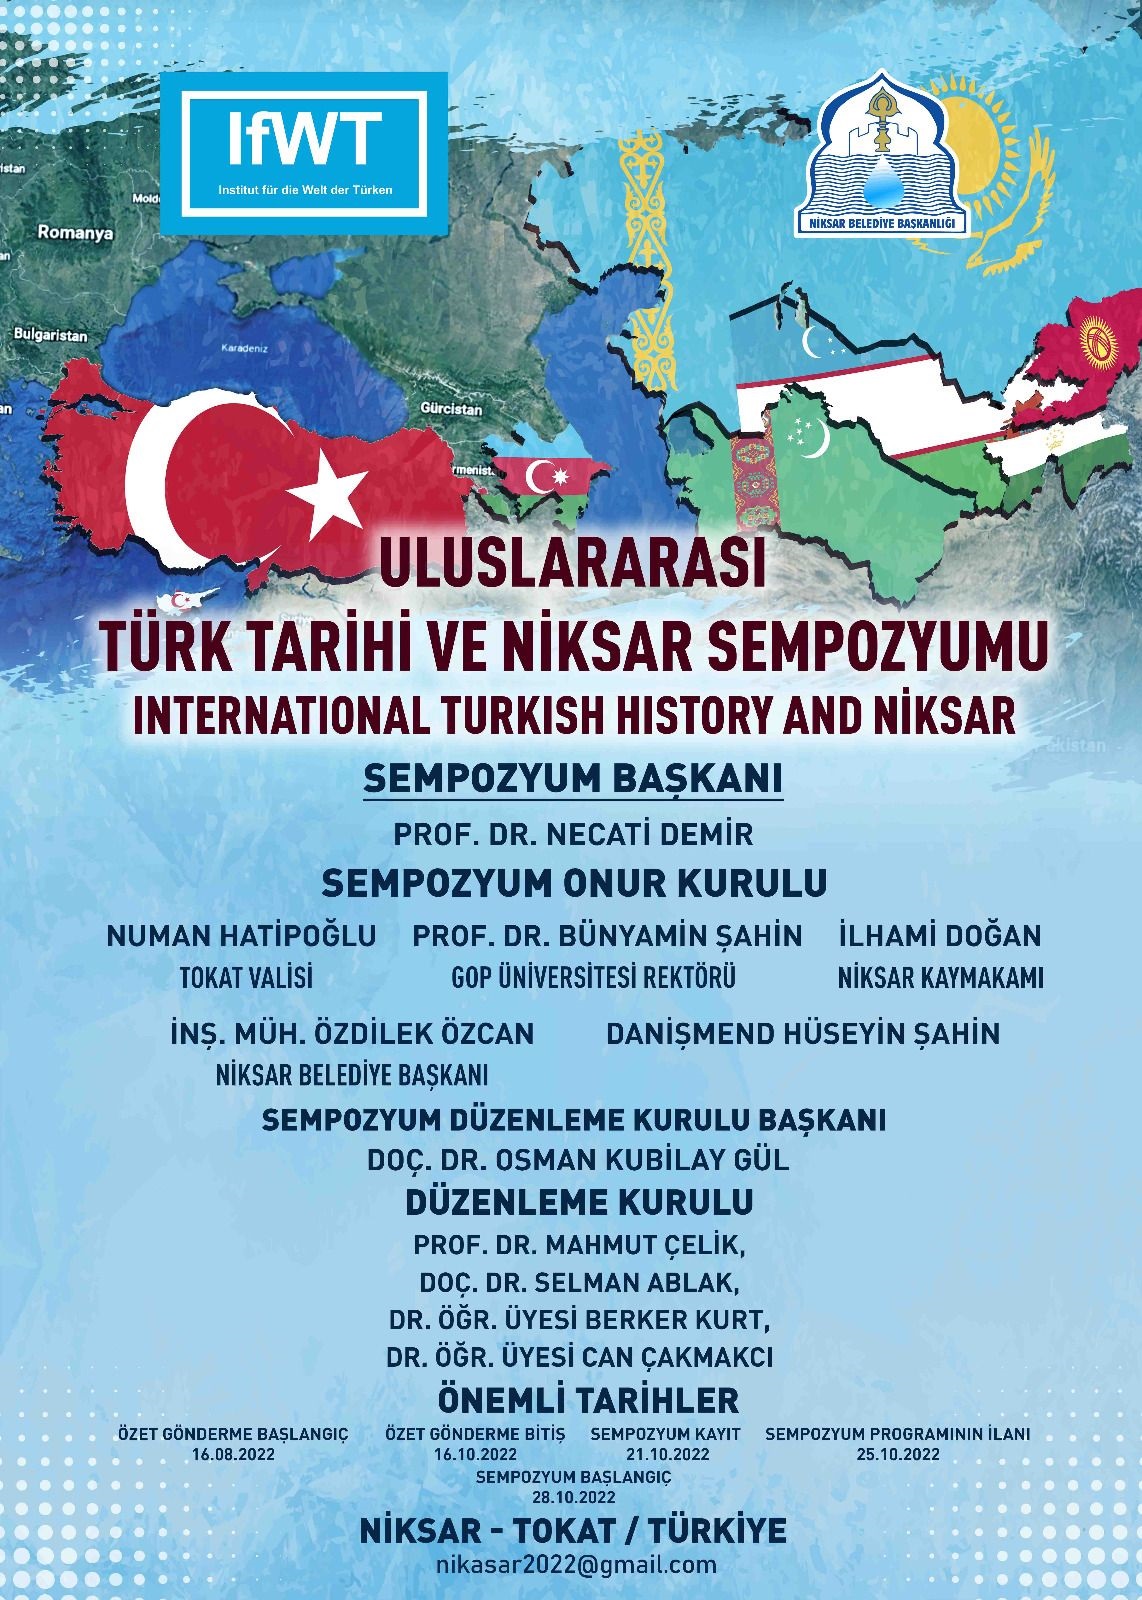 Türklerin Dünyası Dergisi